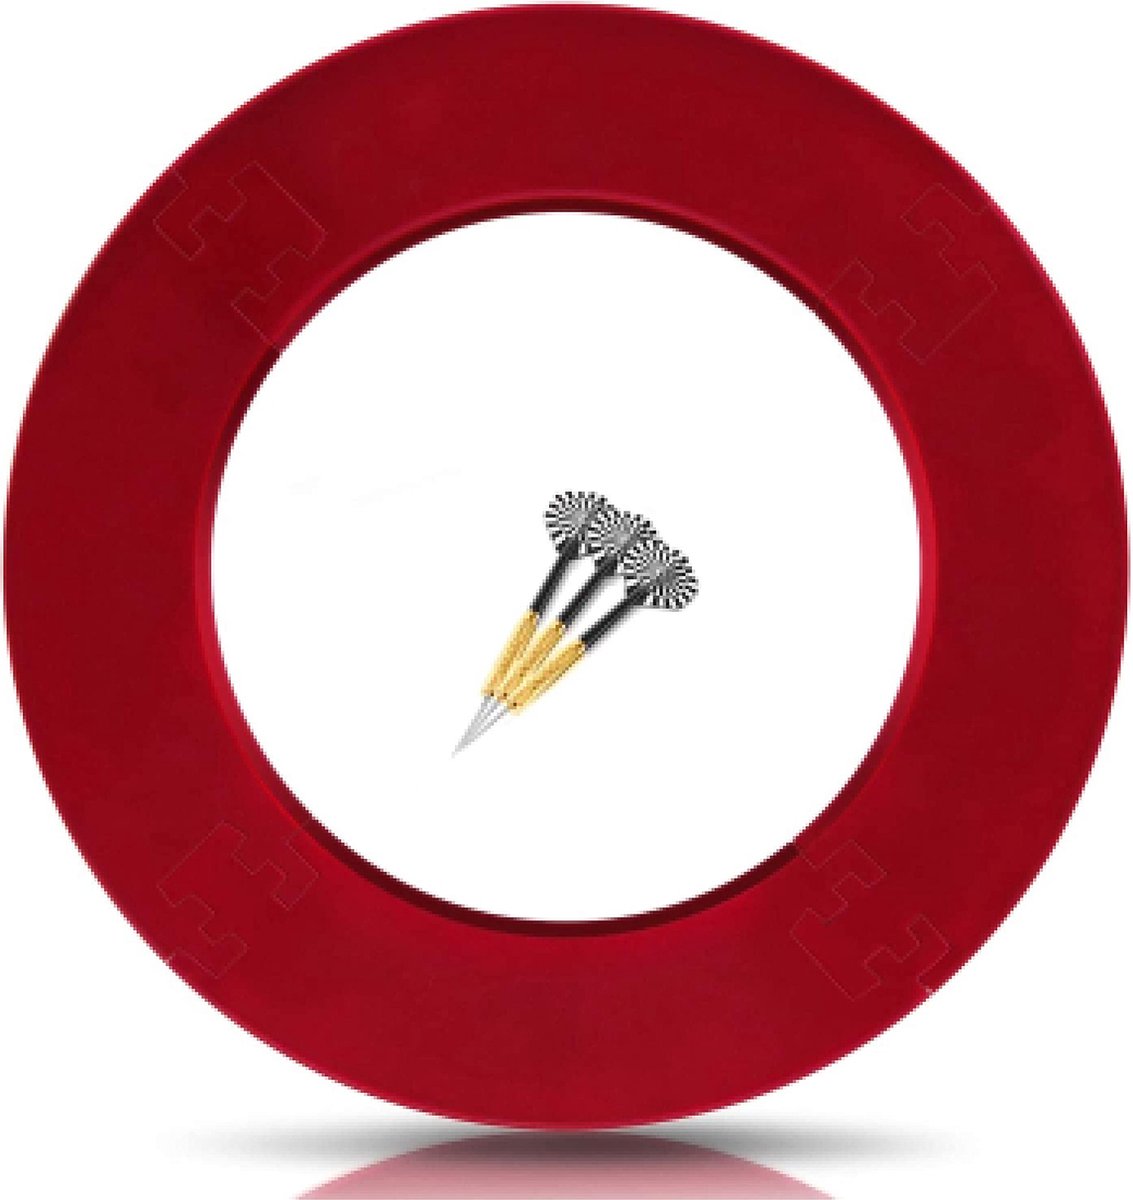 ProDarts Dart Surround Voor Alle Merken Dartborden - Dart Catching Ring In Rood - Hoge Kwaliteit Stabiele Surround - Wandbescherming Voor Het Dartbord Zonder Extra Bevestiging - Professionele Look